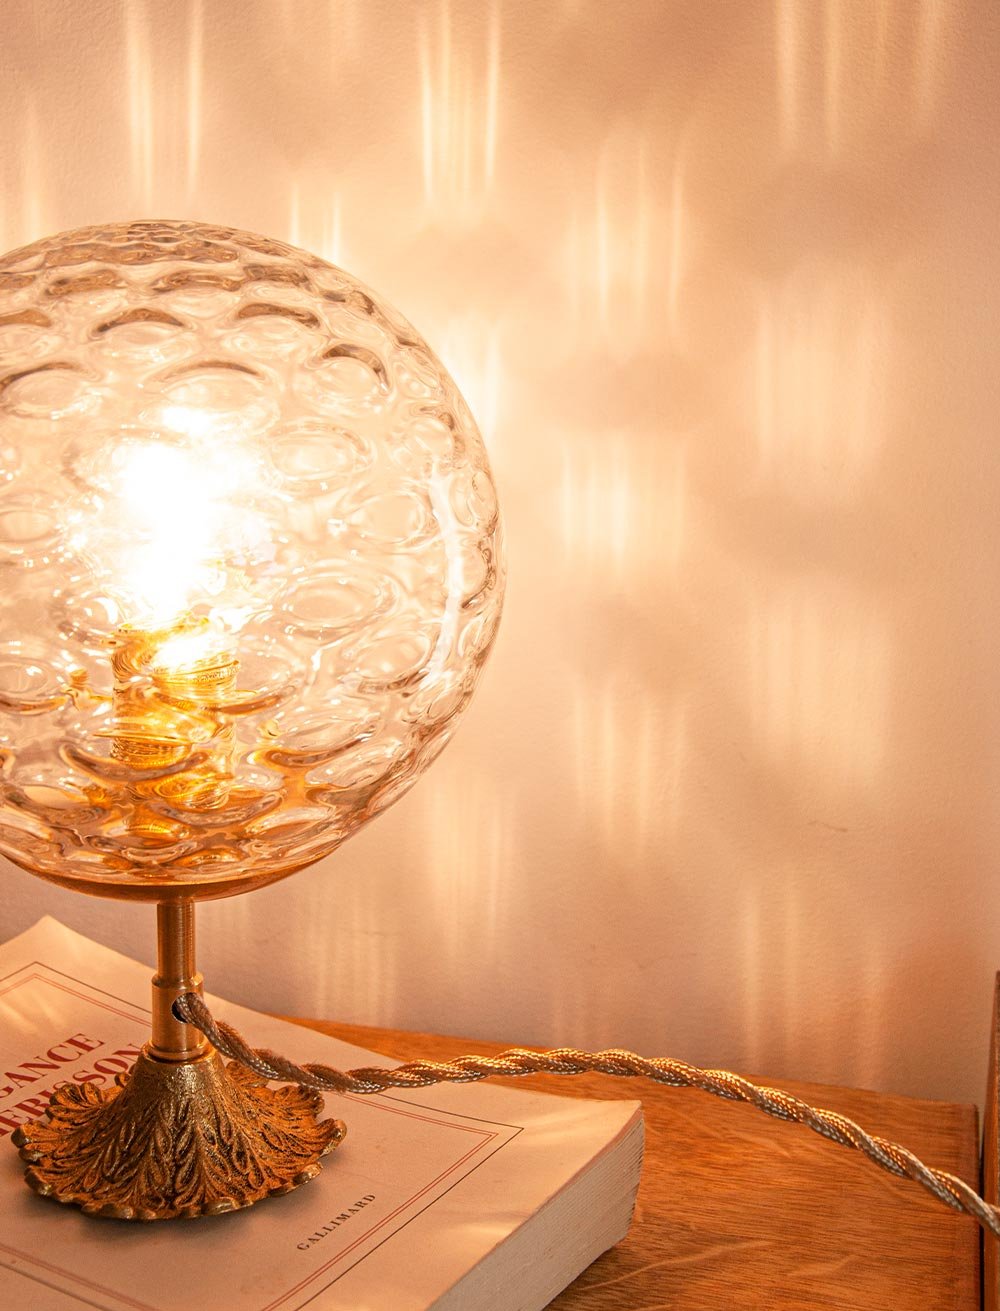 Lampe à poser globe vintage et pied laiton — Moris maison